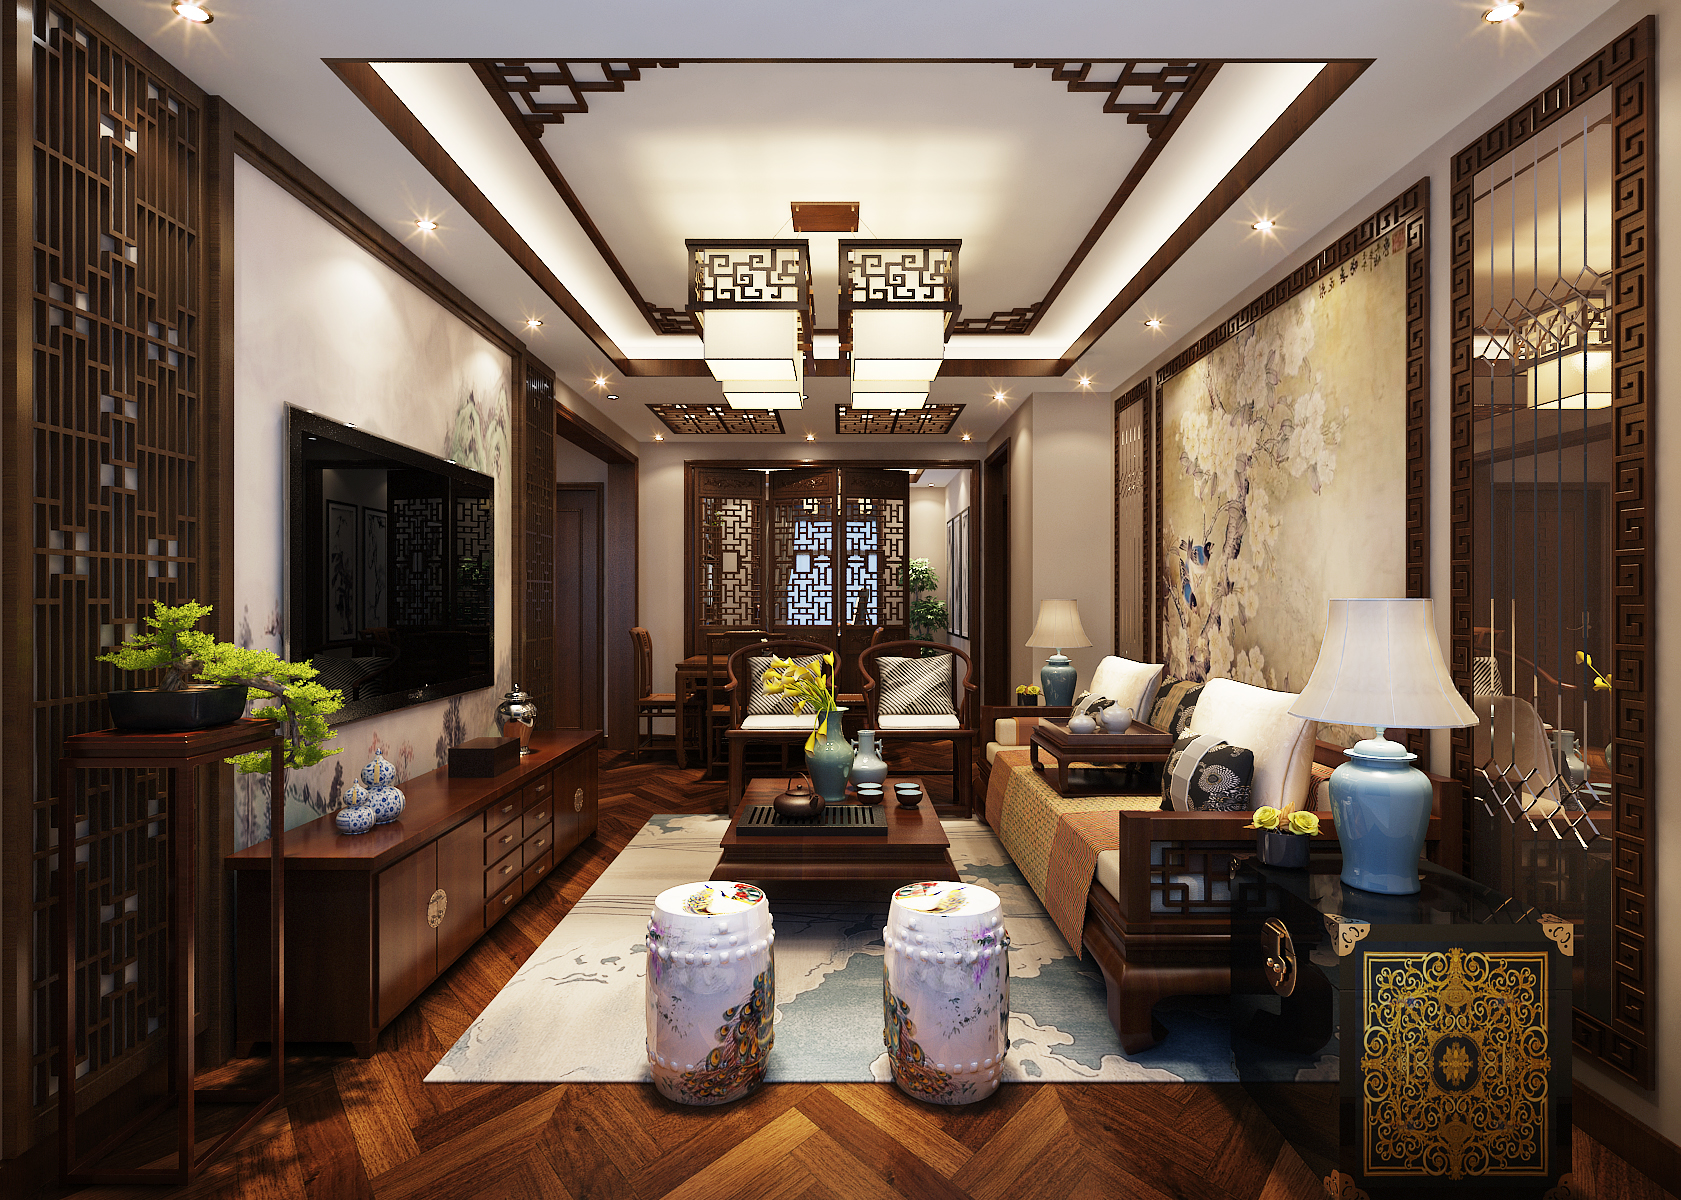 在客厅的设计中加入了中式传统的花格,传统花鸟图的加入不仅将中式的